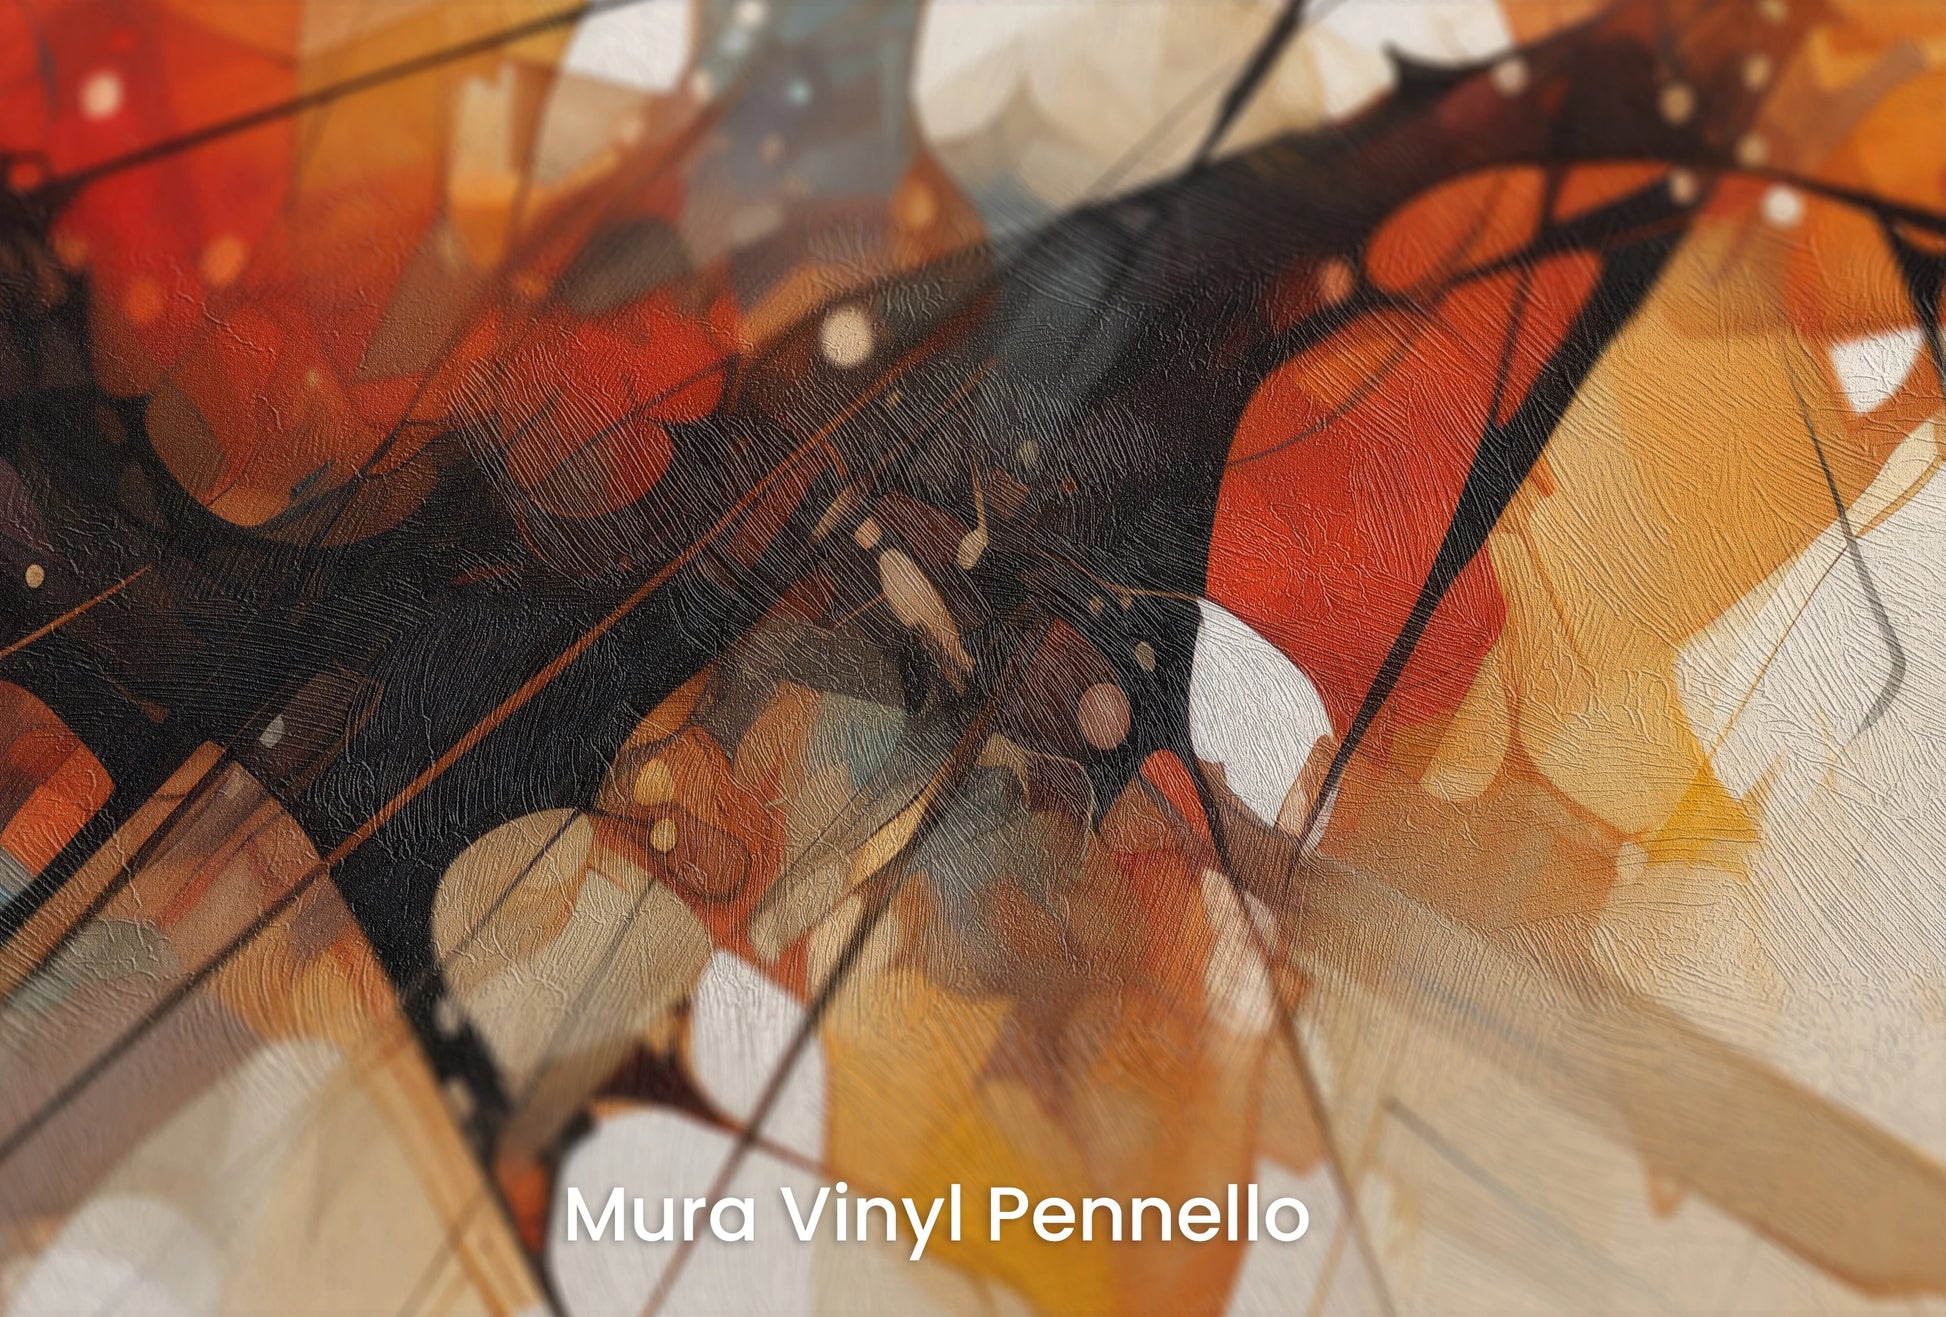 Zbliżenie na artystyczną fototapetę o nazwie Abstract Dynamics #3 na podłożu Mura Vinyl Pennello - faktura pociągnięć pędzla malarskiego.